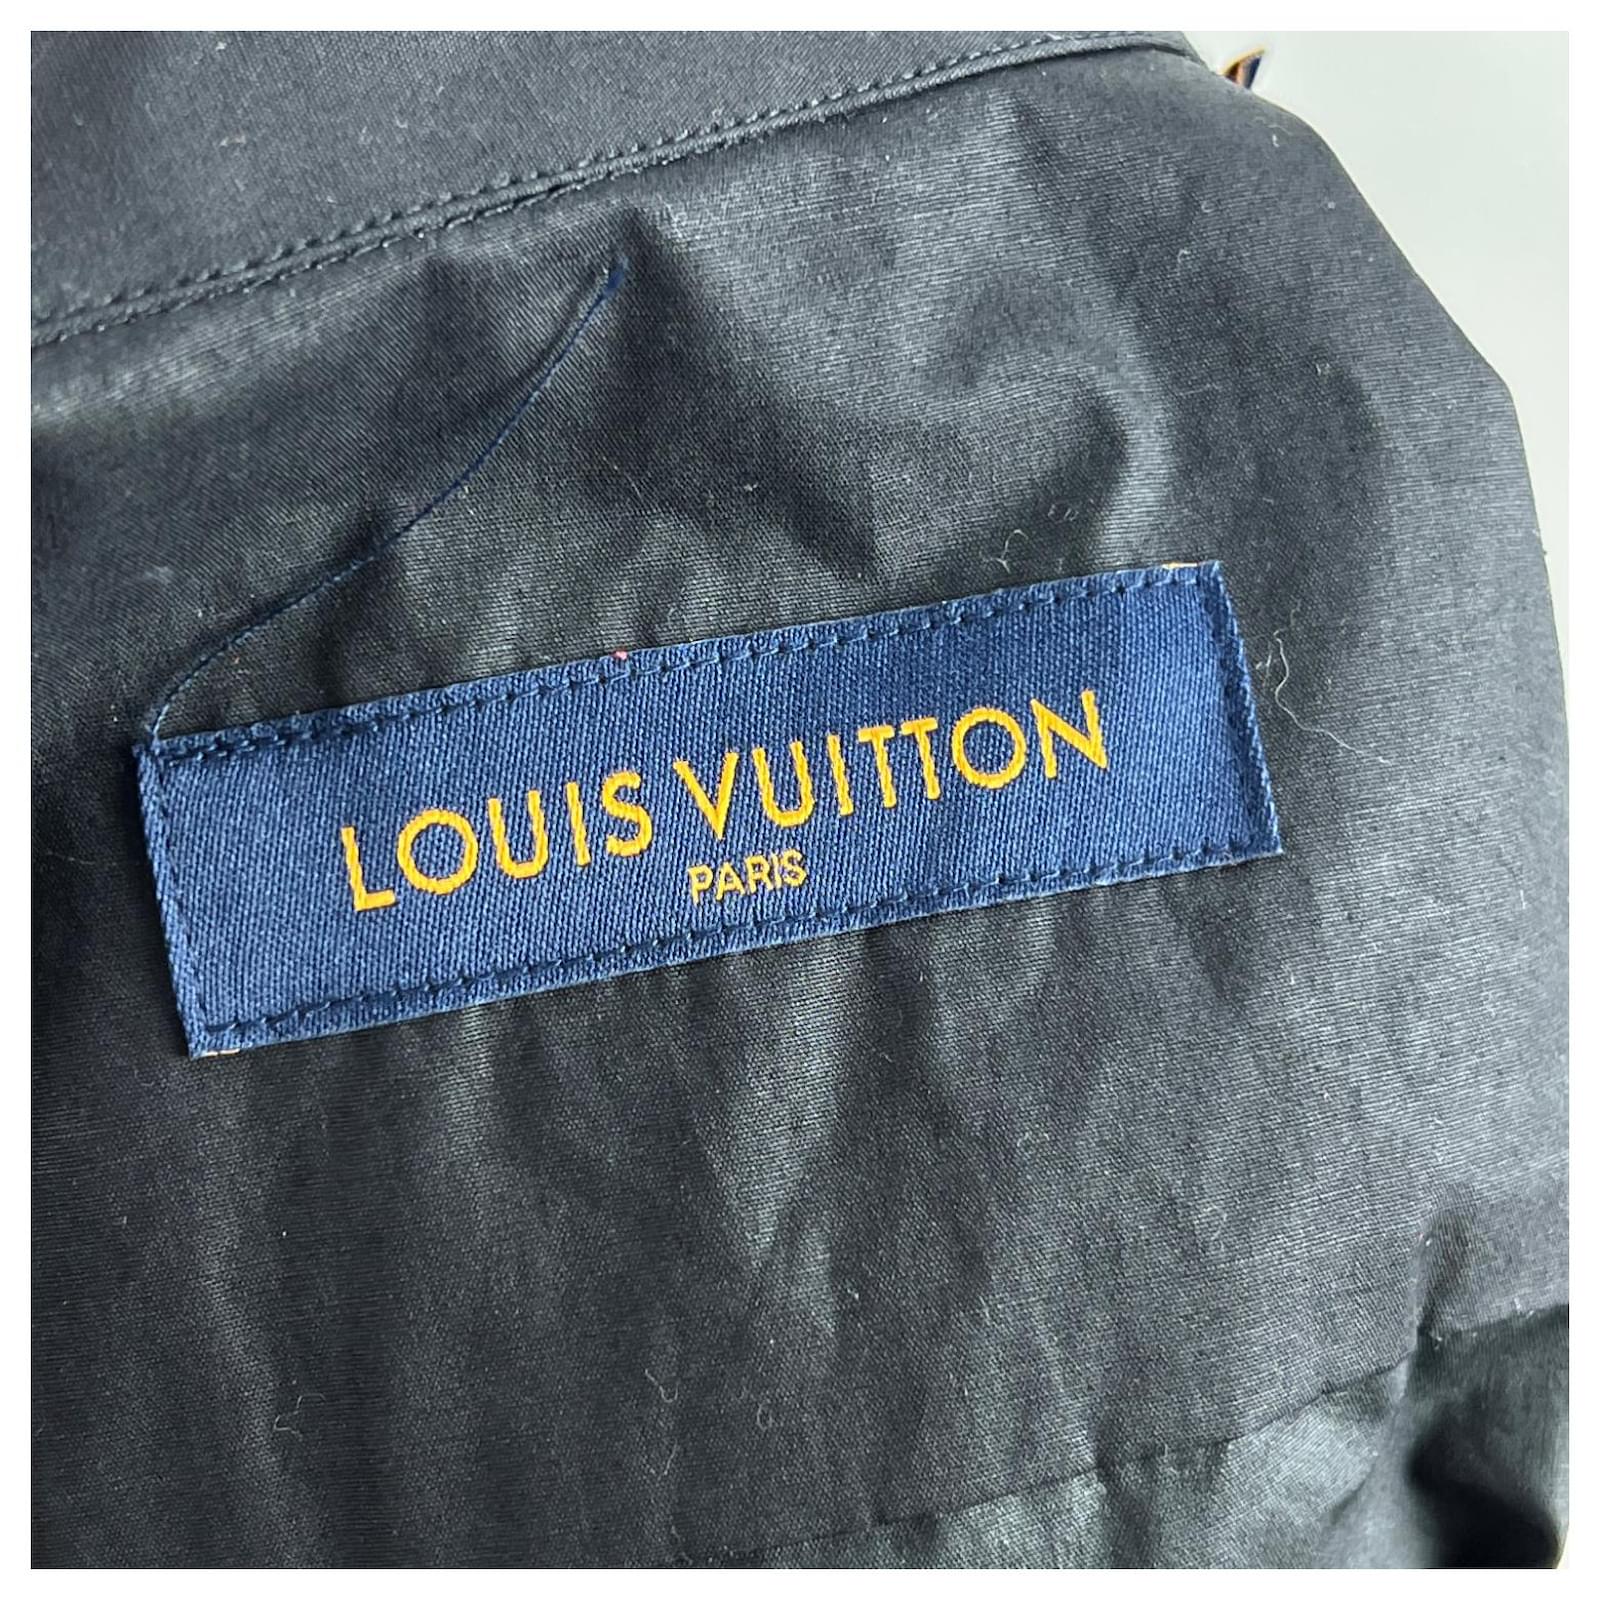 Camisetas Louis Vuitton occasione - Joli Closet